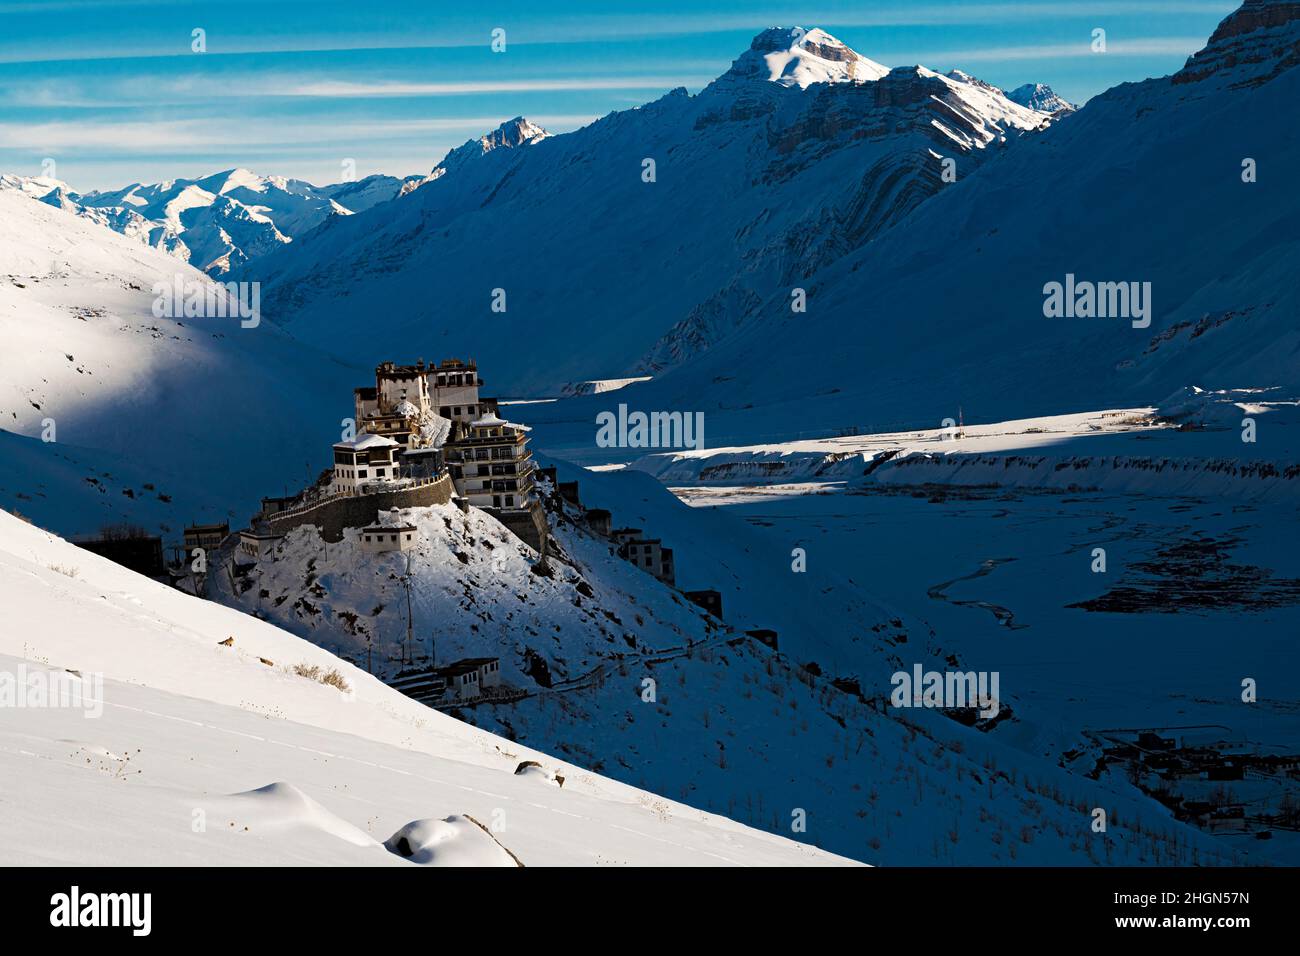 Monastère clé en hivers dans un paysage enneigé Banque D'Images